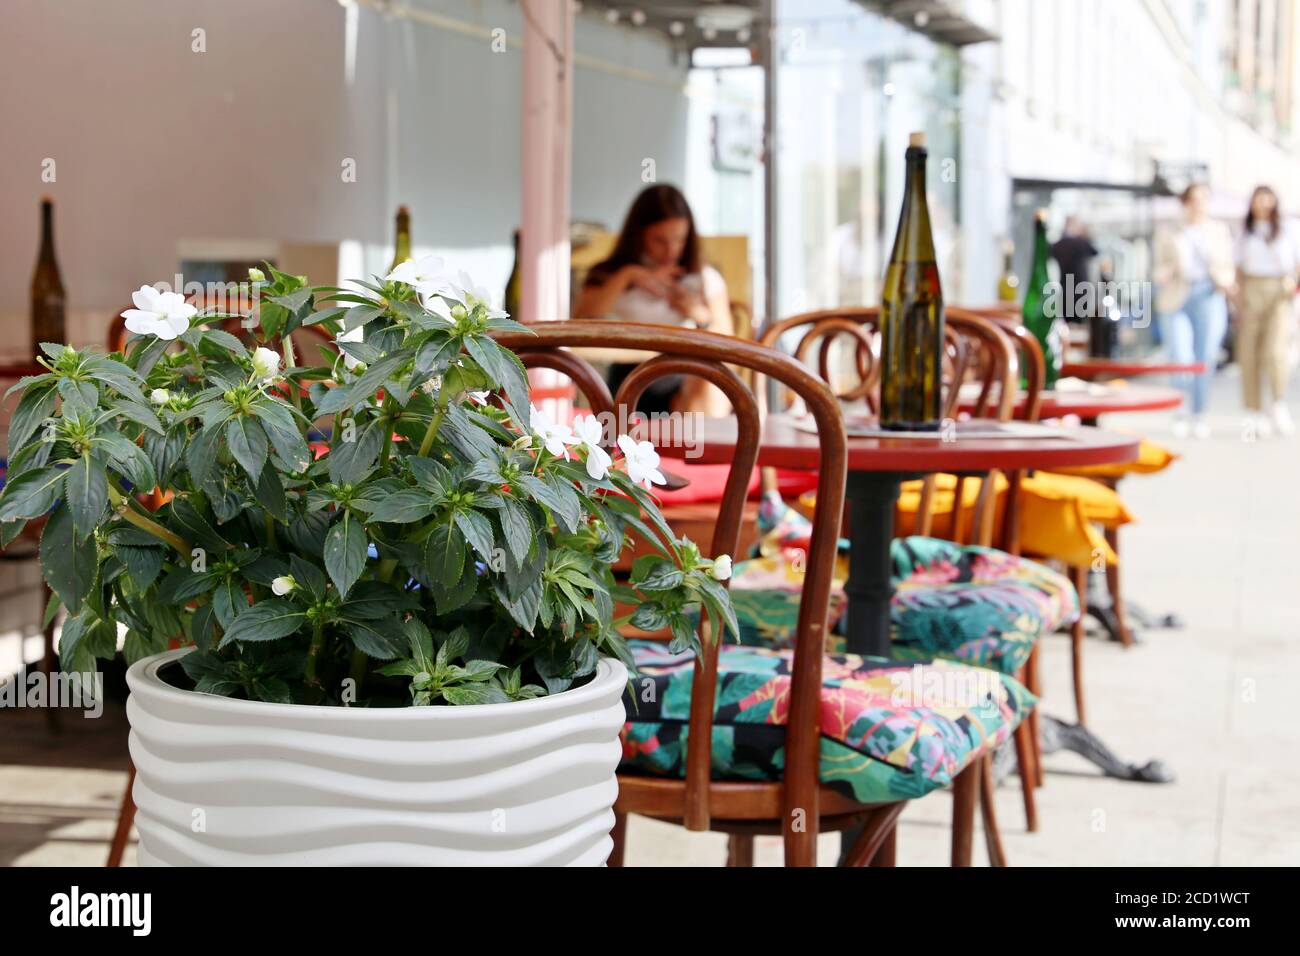 Straßencafé in einer Stadt, Tische mit Flaschen in einem Restaurant im Freien, elegante Umgebung für Feier und Datum. Topf mit Blumen und Vintage-Stühle Stockfoto